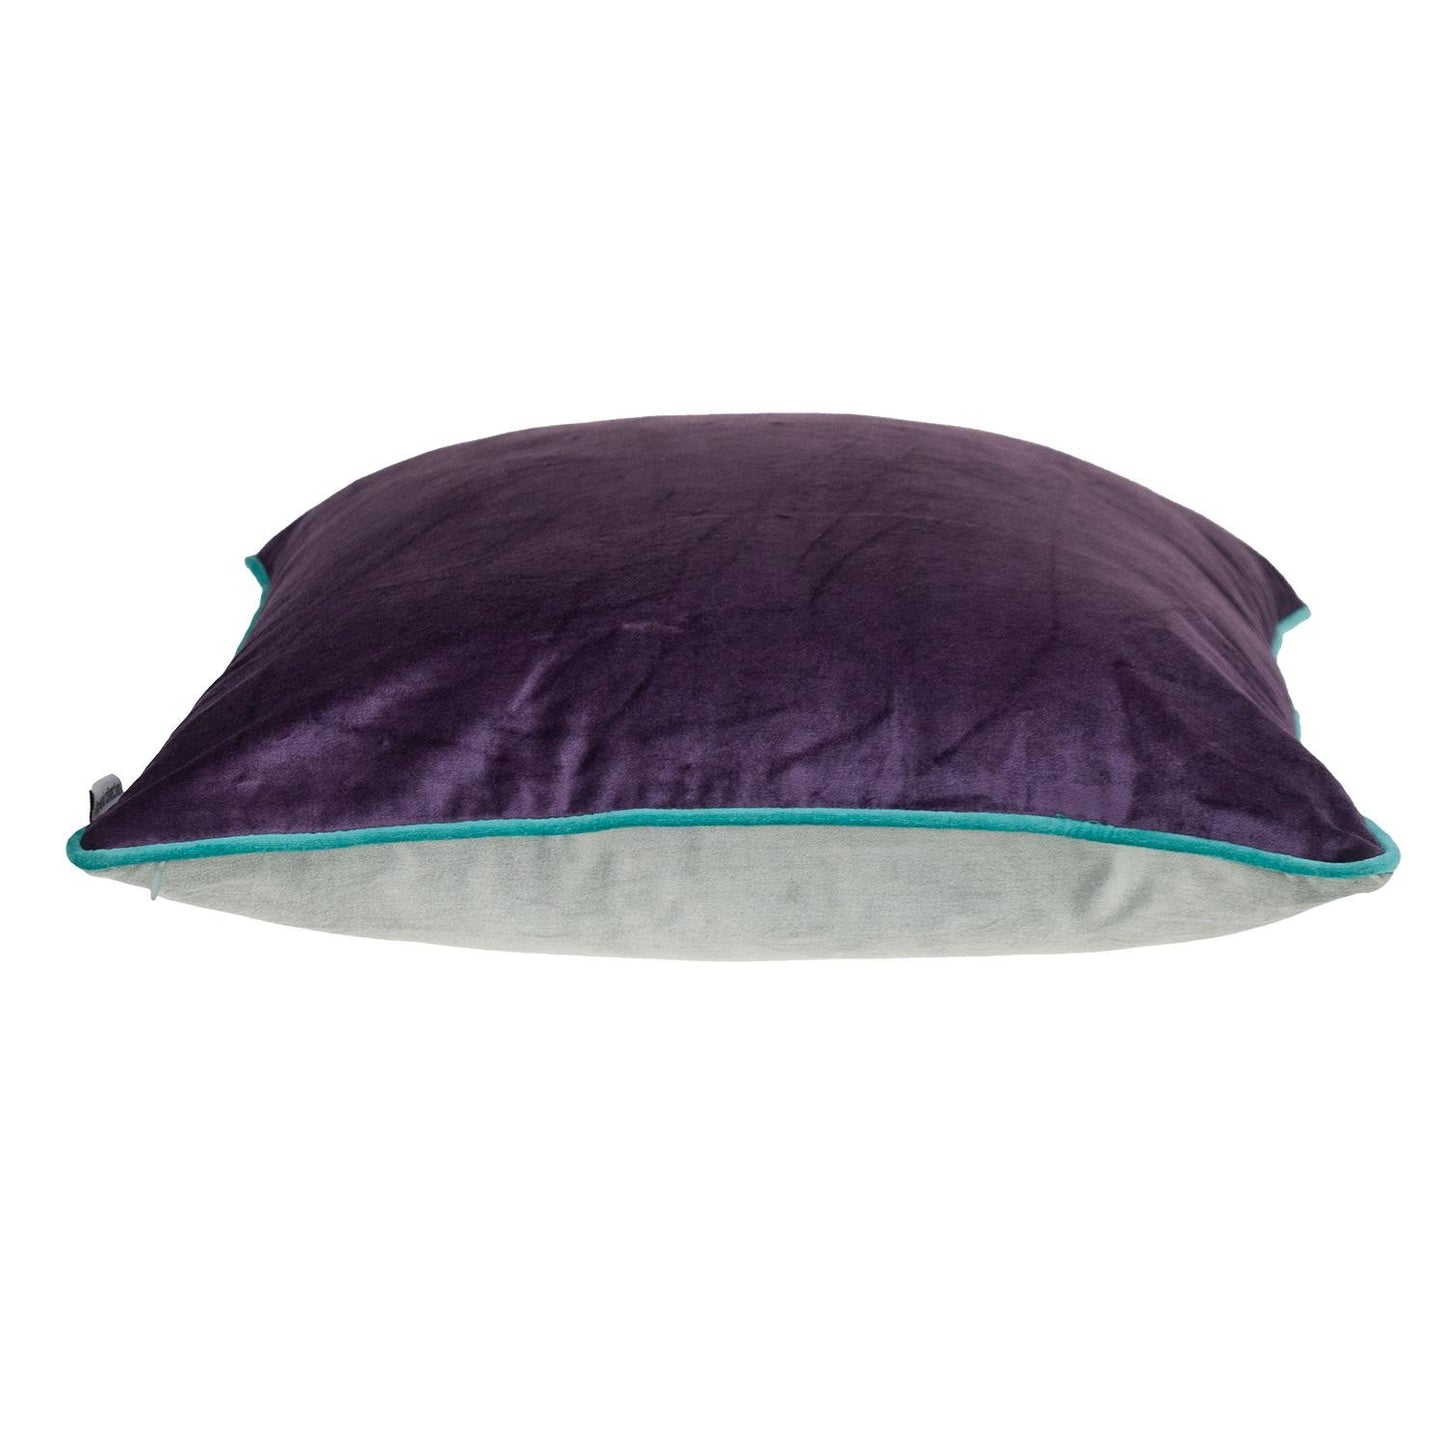 Purple and White Reversible Velvet Throw Pillow